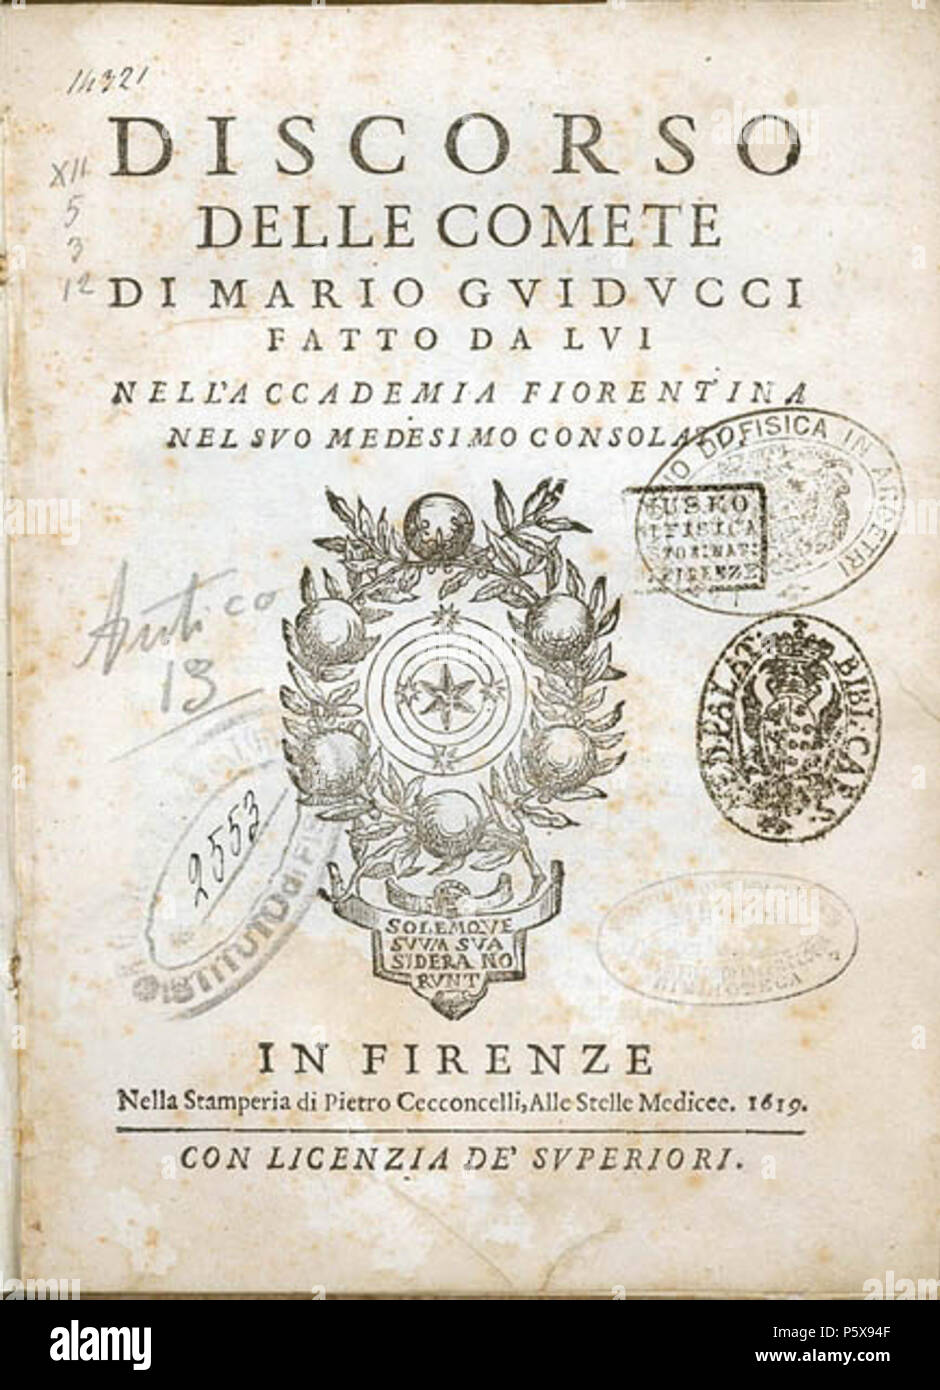 N/A. Italiano: Discorso delle comete, Firenze 1619. 1619. Mario Guiducci e Galileo Galilei 457 Discorso delle comete Stockfoto